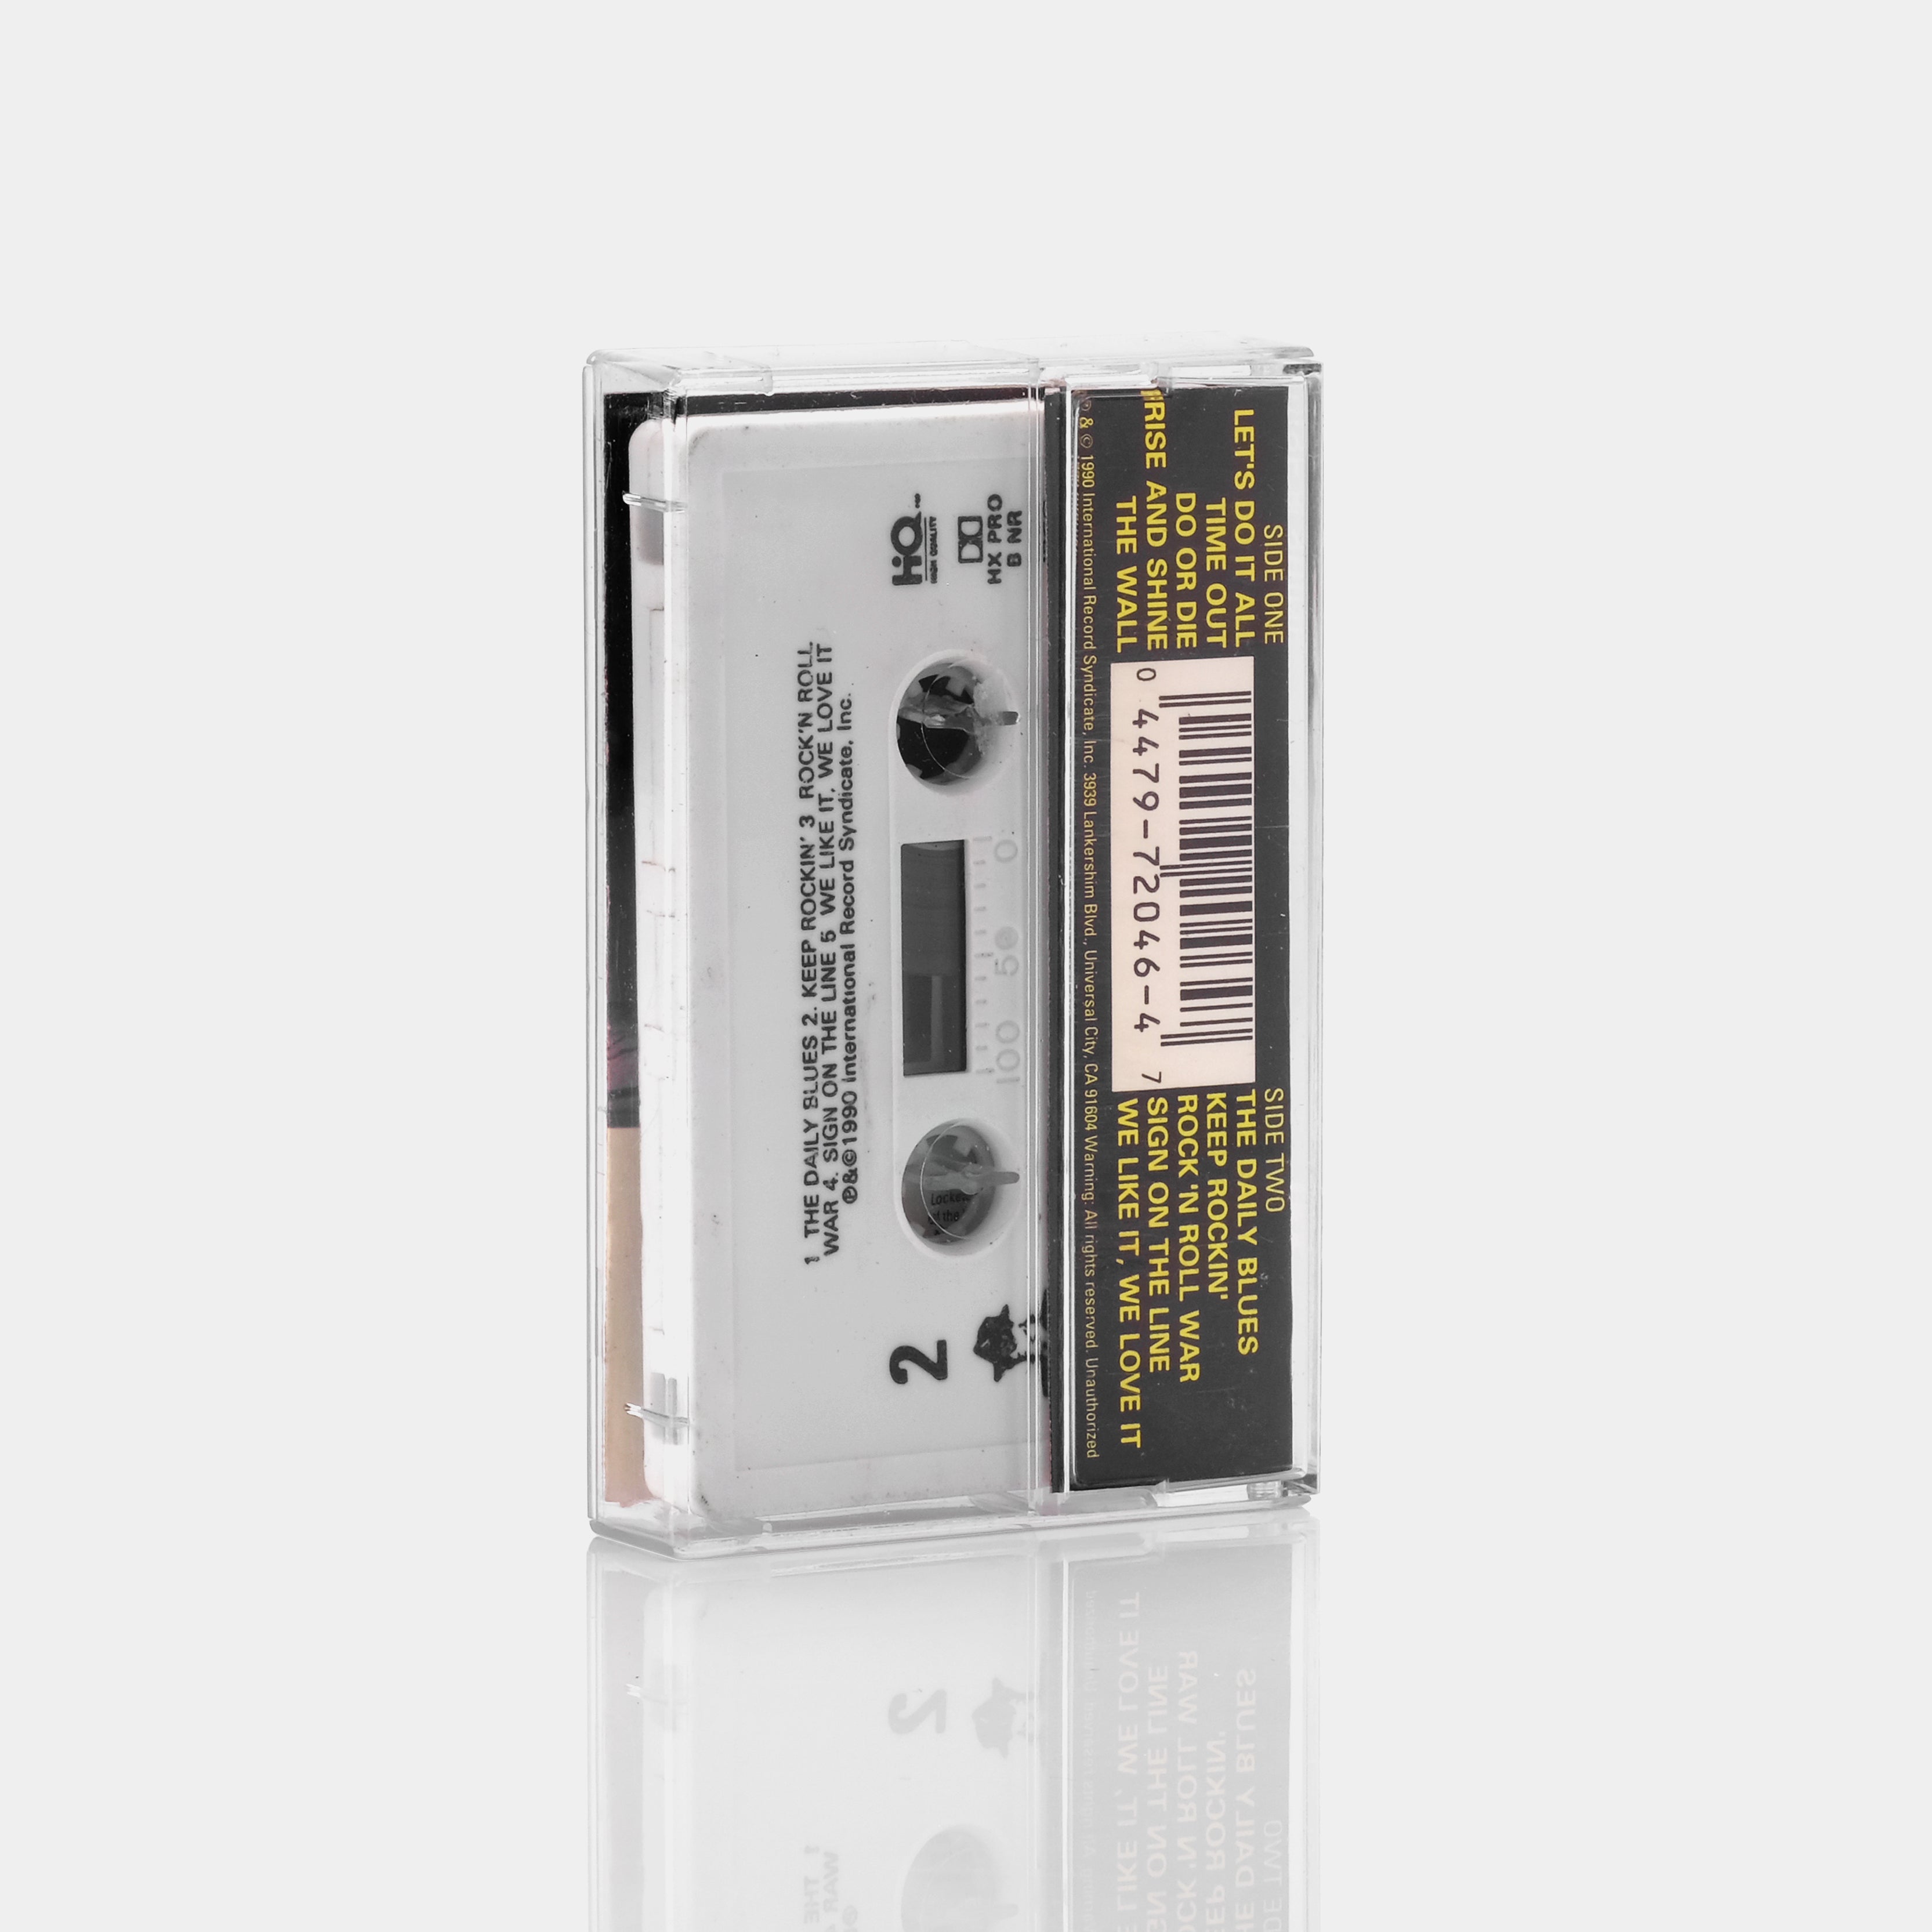 John Kay & Steppenwolf - Rise & Shine Cassette Tape